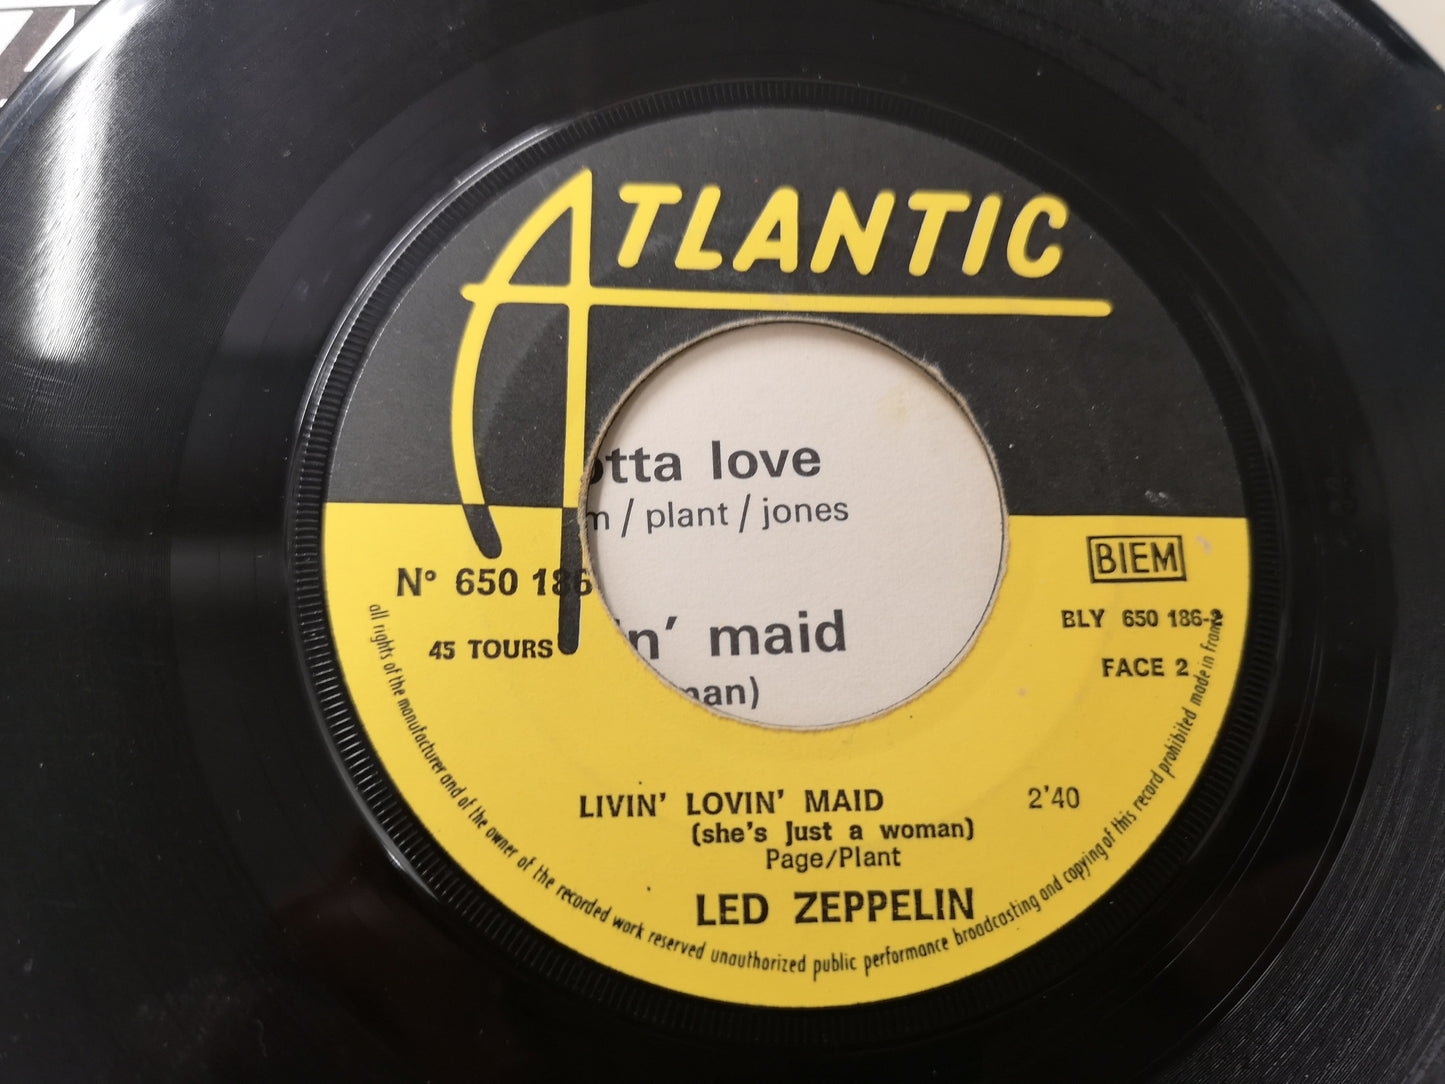 Led Zeppelin "Whole Lotta Love" Orig France 1970 VG++/VG++ (7" Single)